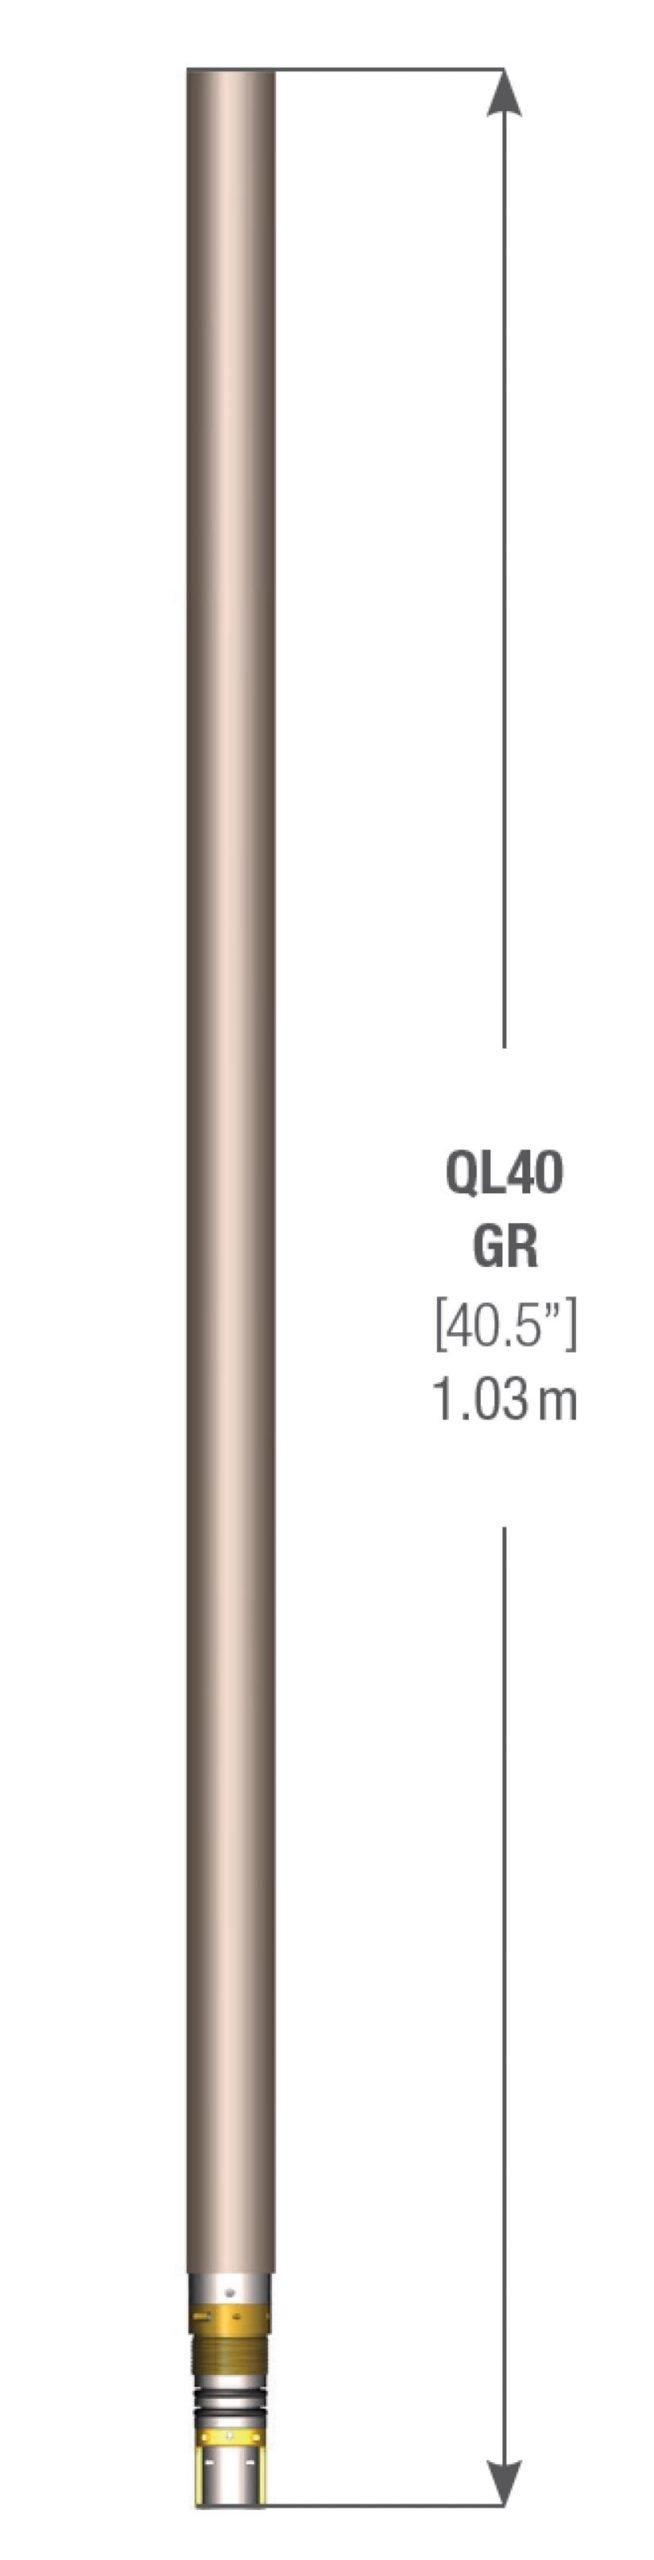 Зонд гамма-каротажа QL40-GR (GAM)